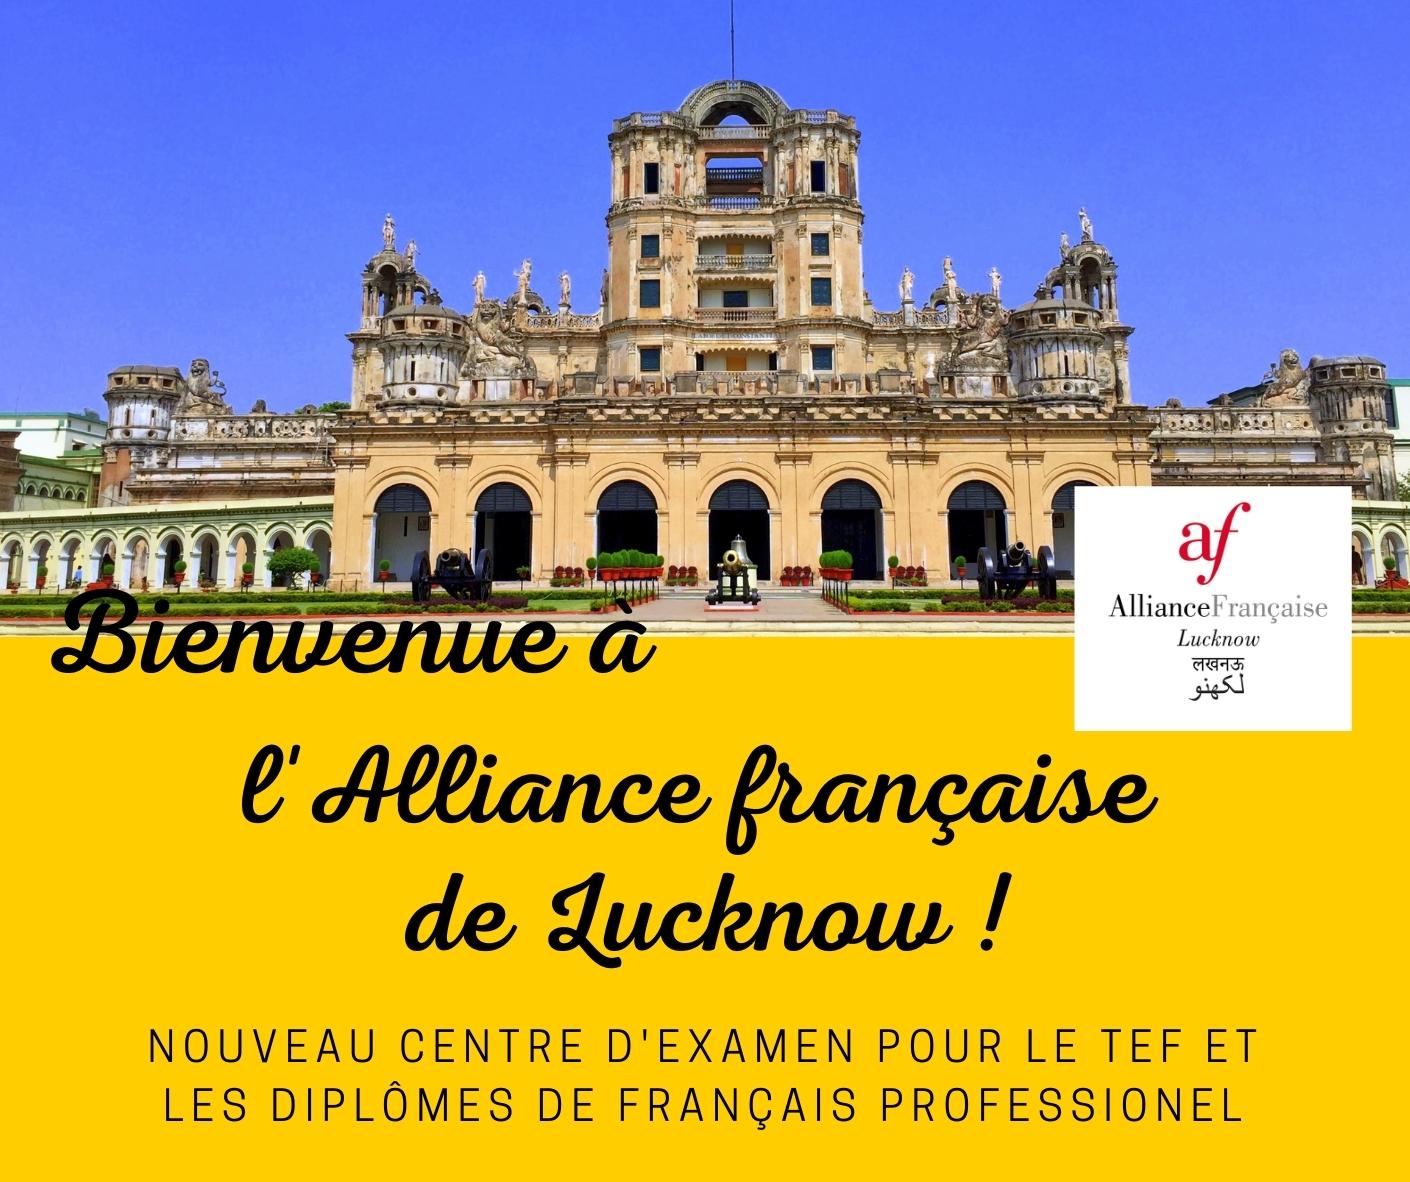 Alliance Française de Lucknow